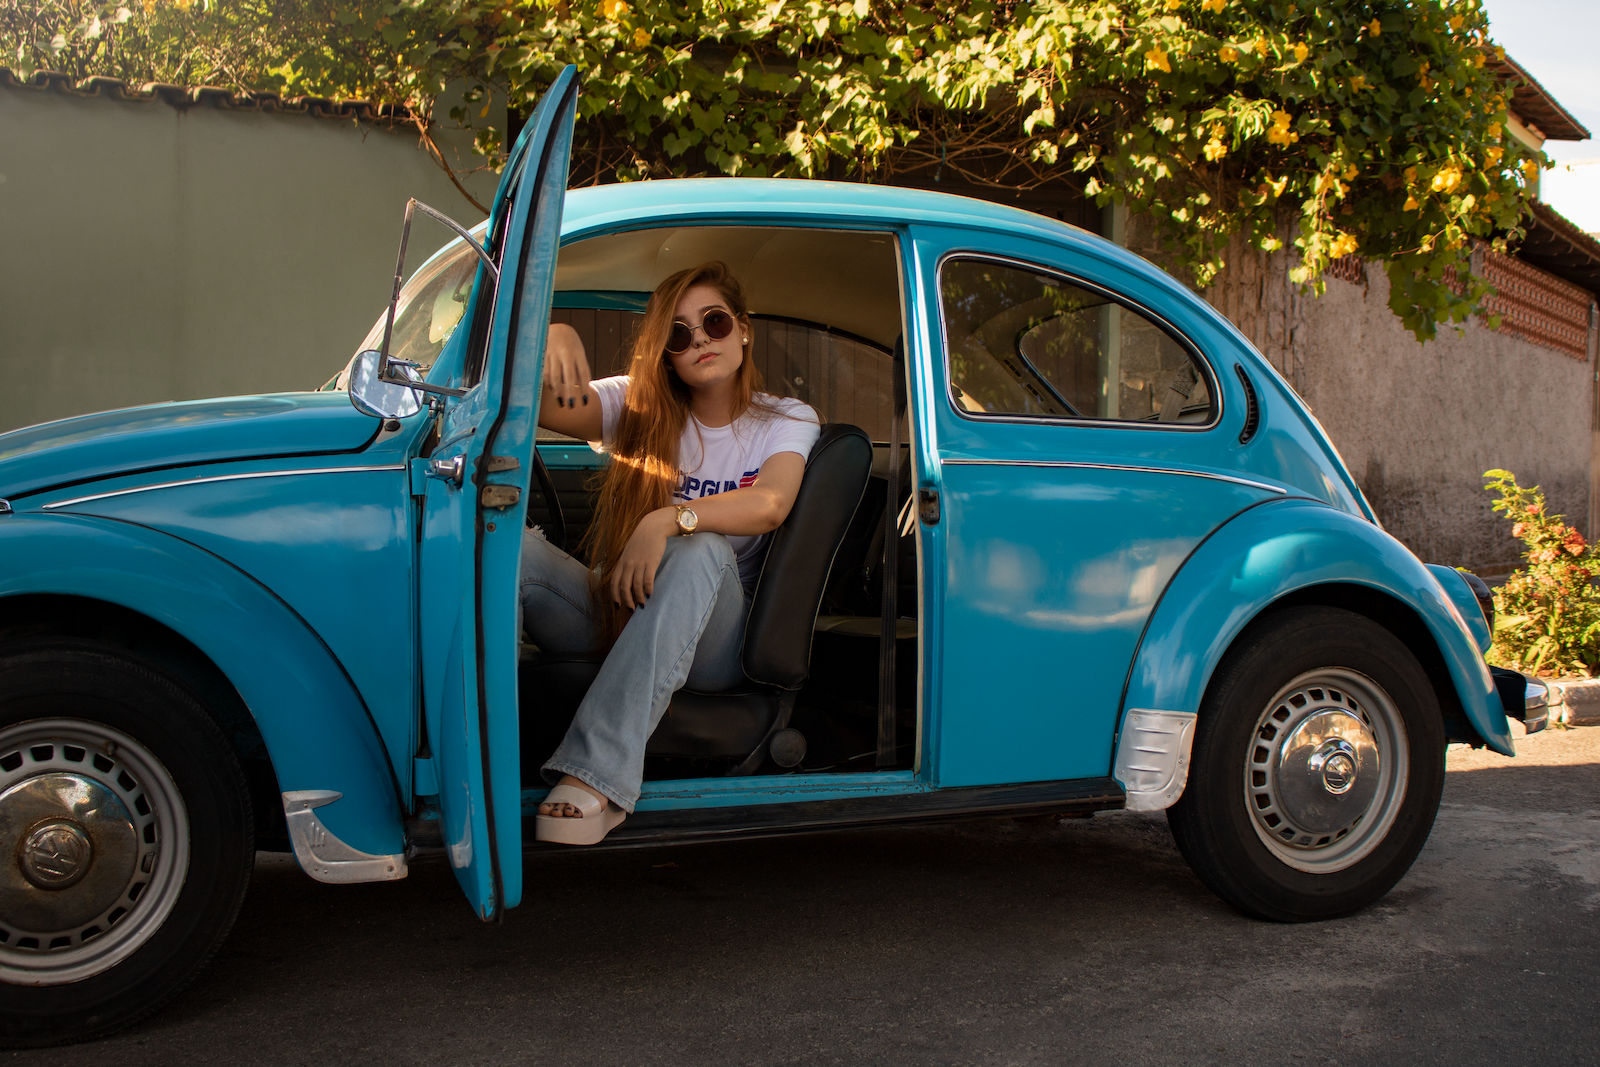 vw beetle, Woman Wearing White Shirt Sitting Inside Blue Volkswagen Beetle